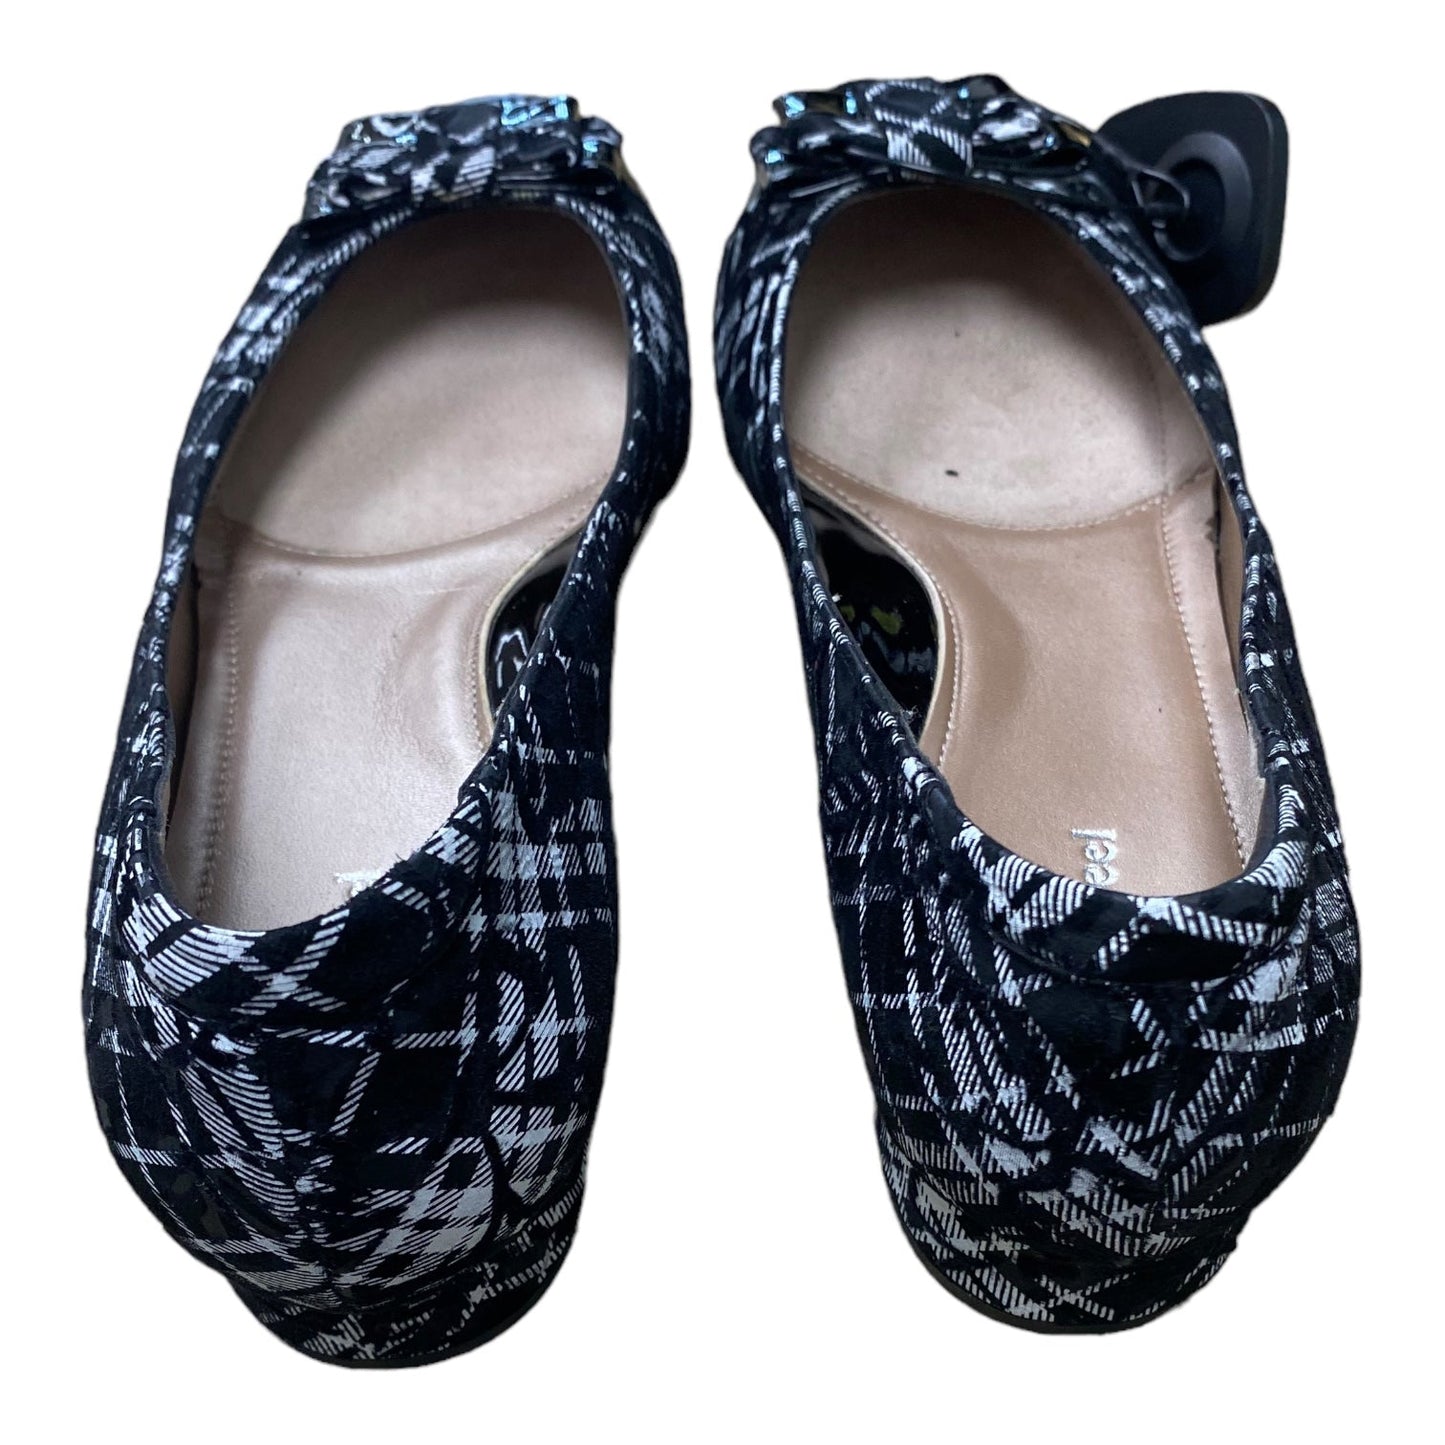 Black & White Shoes Heels Block BeautiFeel - MSRP $300+ , Size 7.5